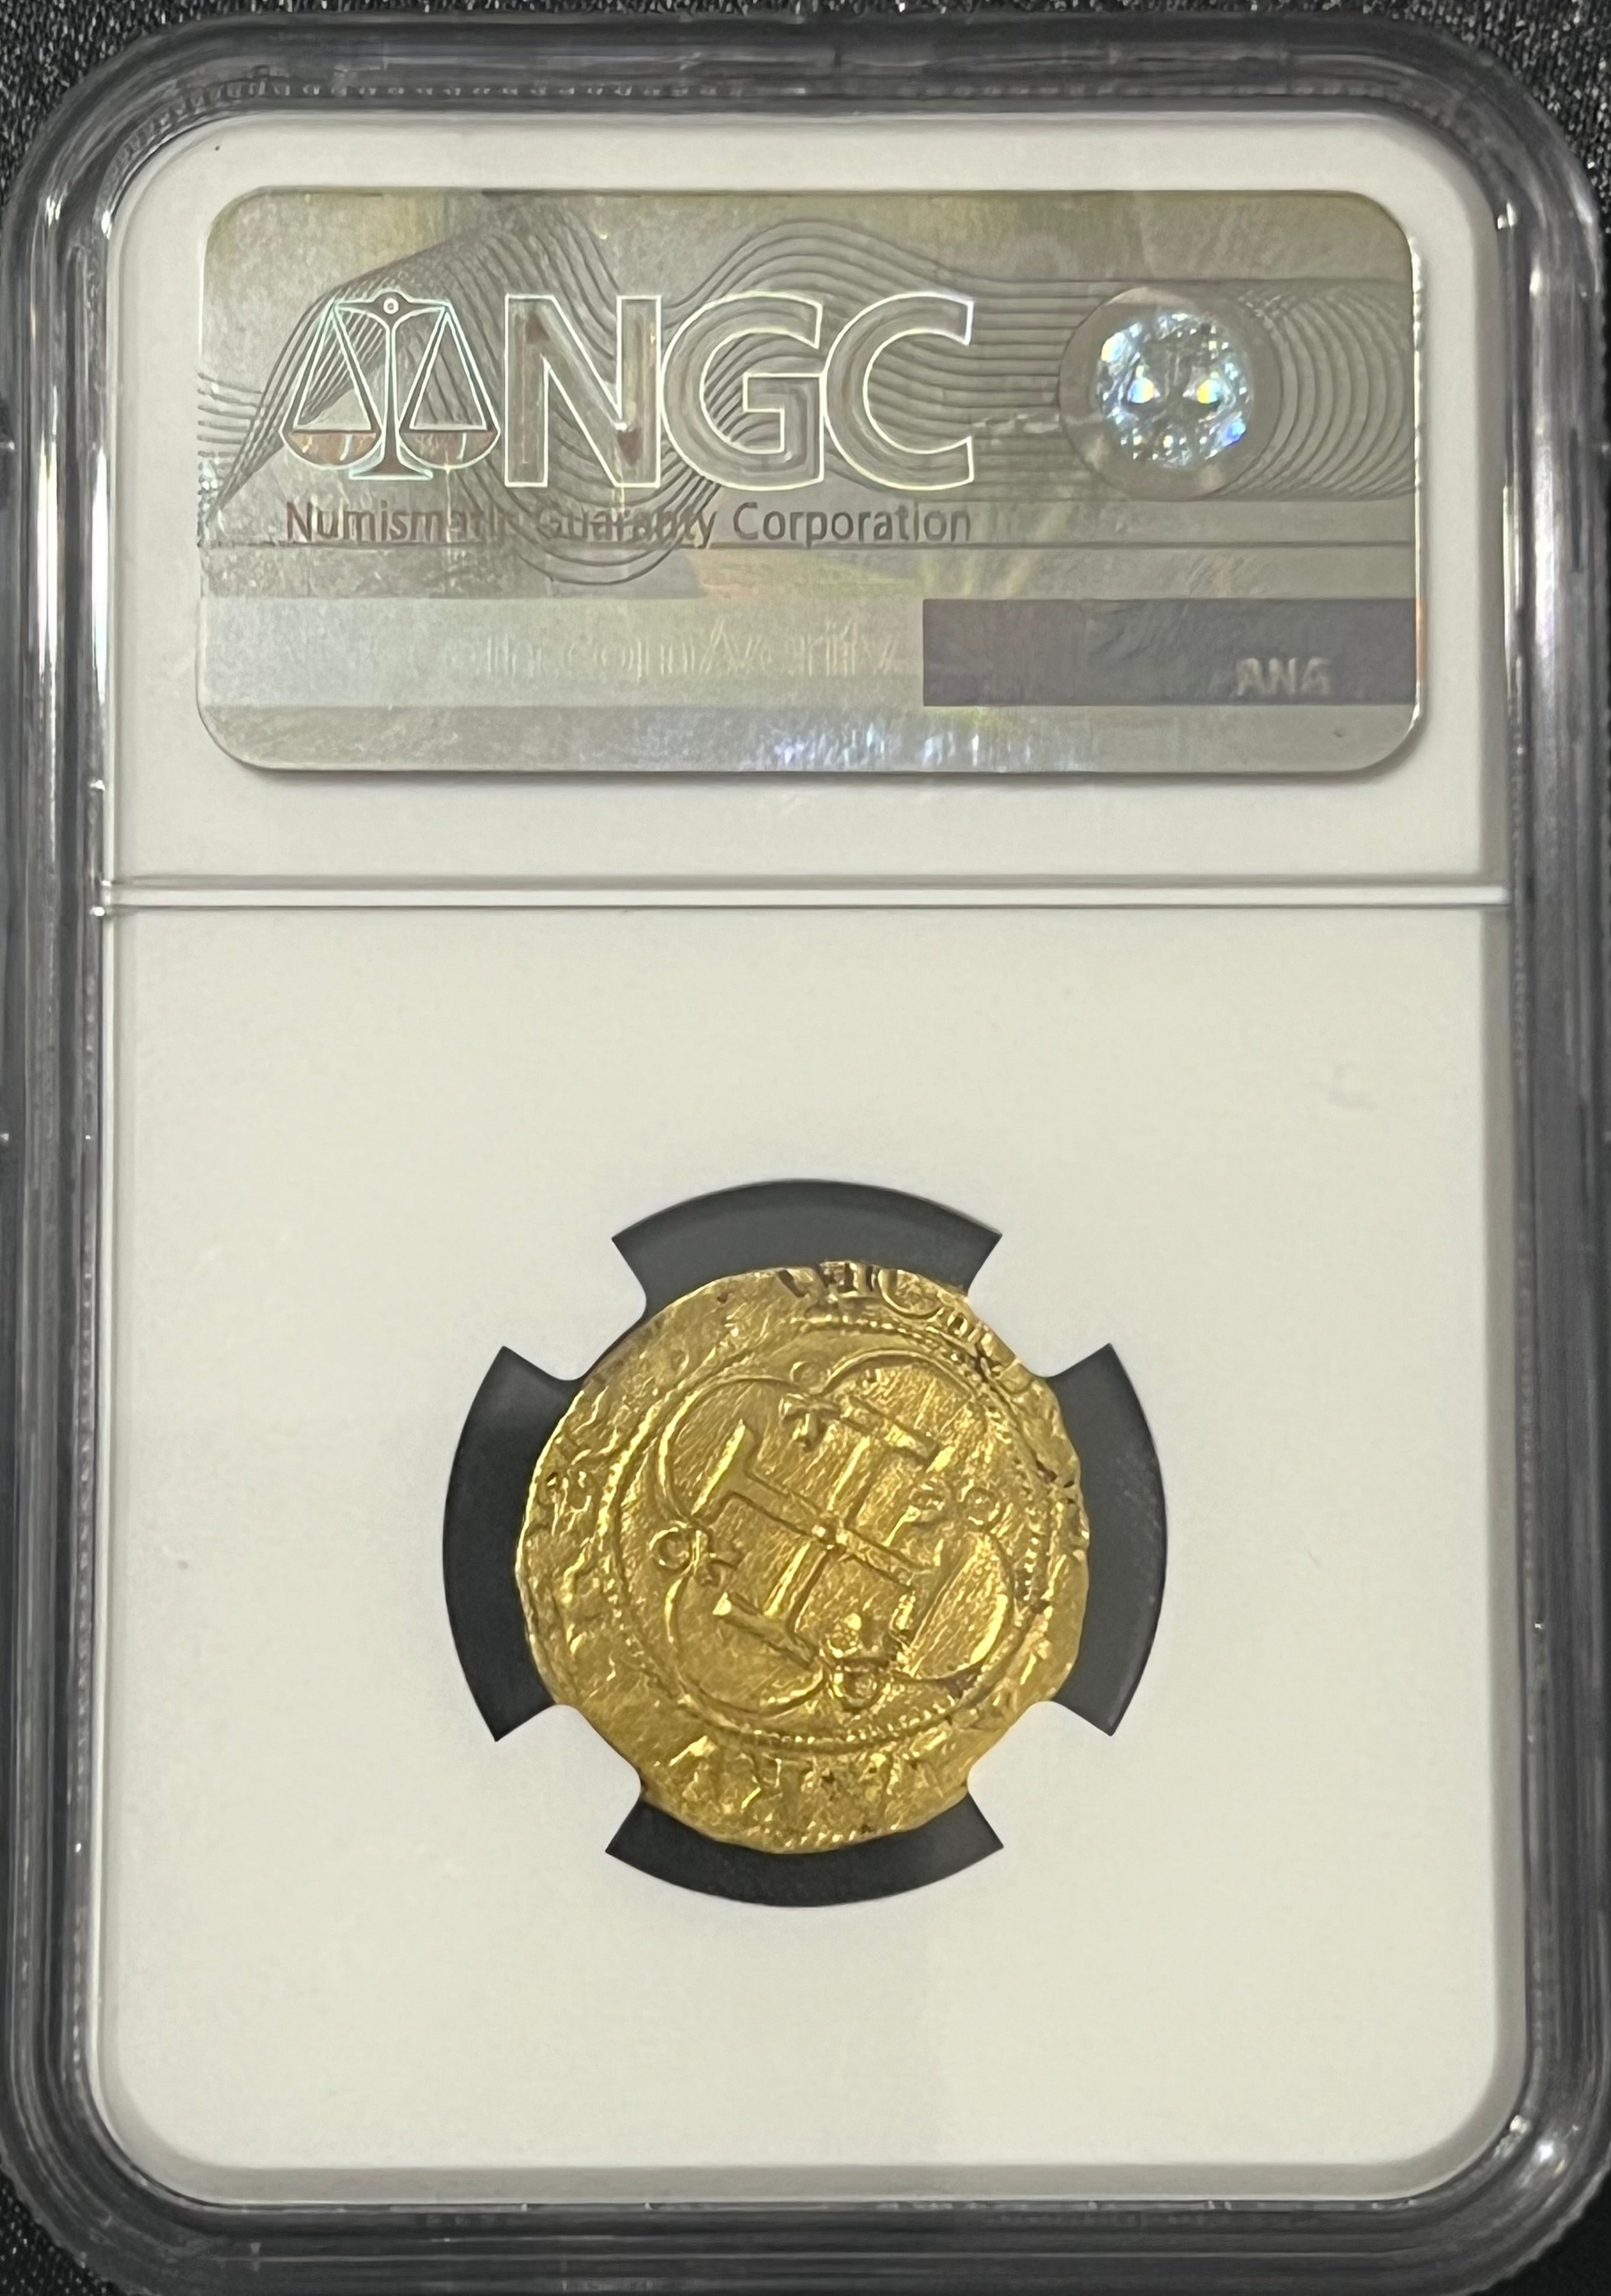 1 Escudo Seville, Spain Gold Coin NGC Grade AU Details